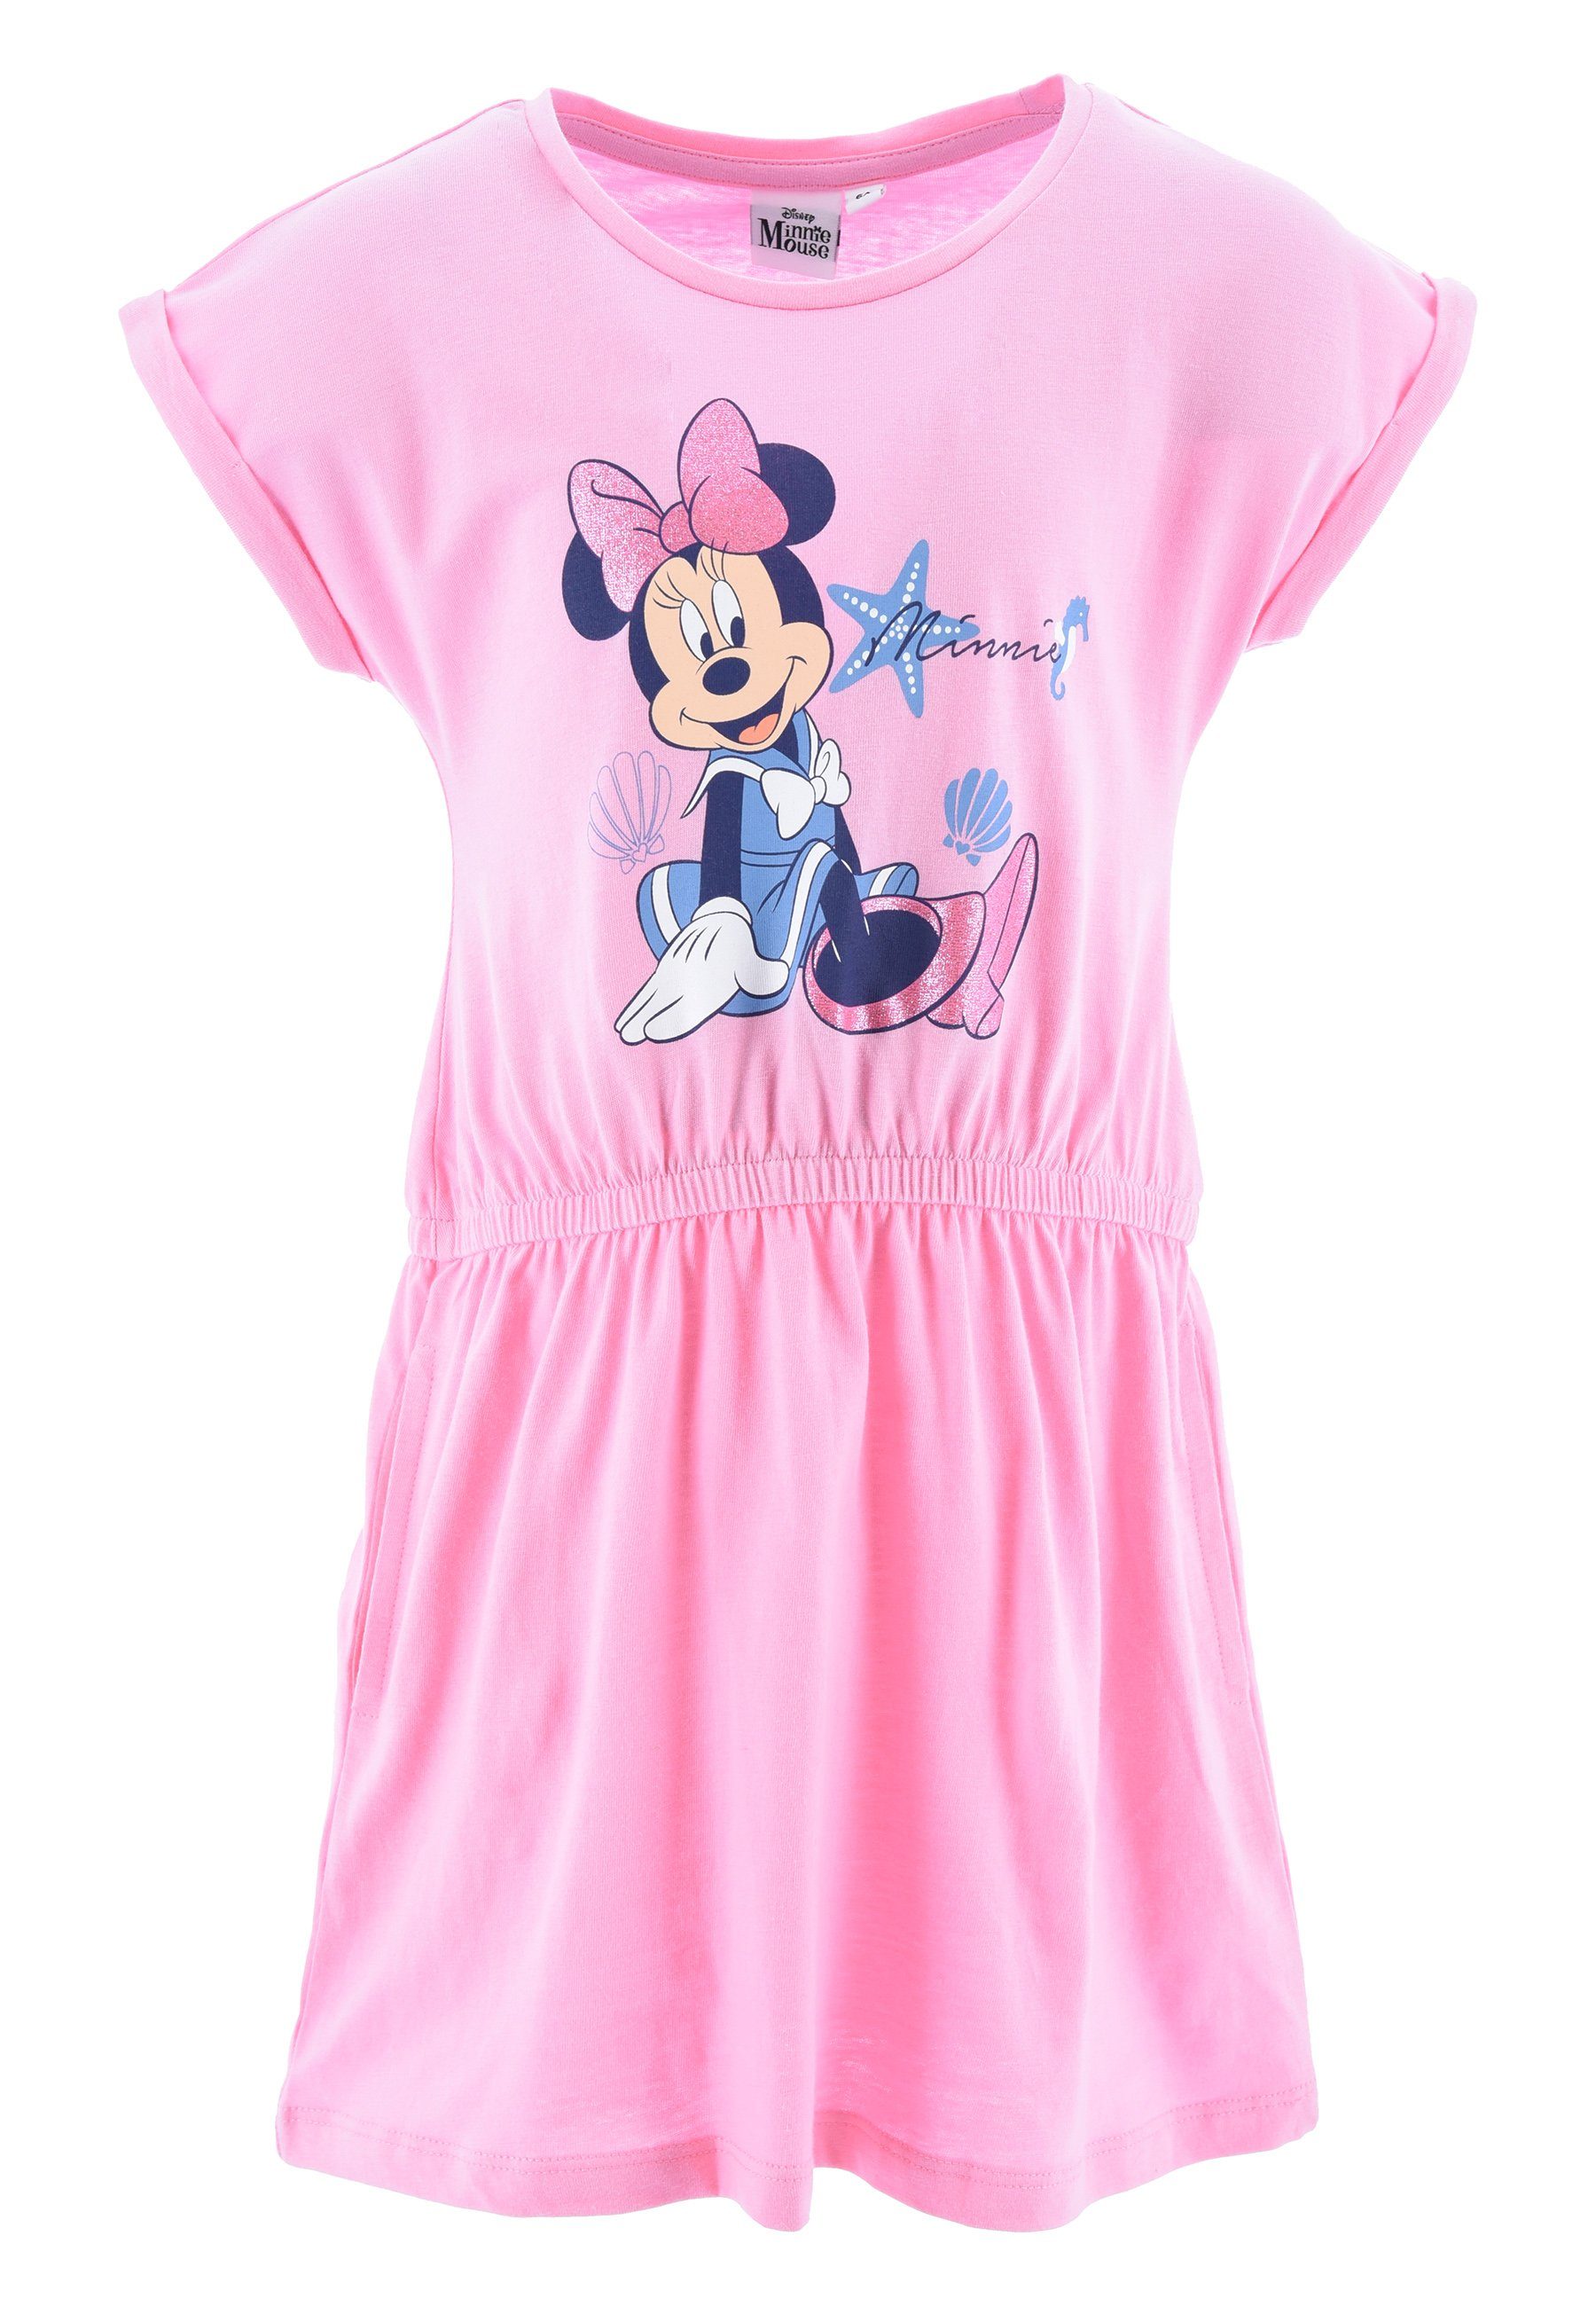 Disney Minnie Mouse Sommerkleid Pink kurzarm Sommer-Kleid Mädchen Strand-Kleid